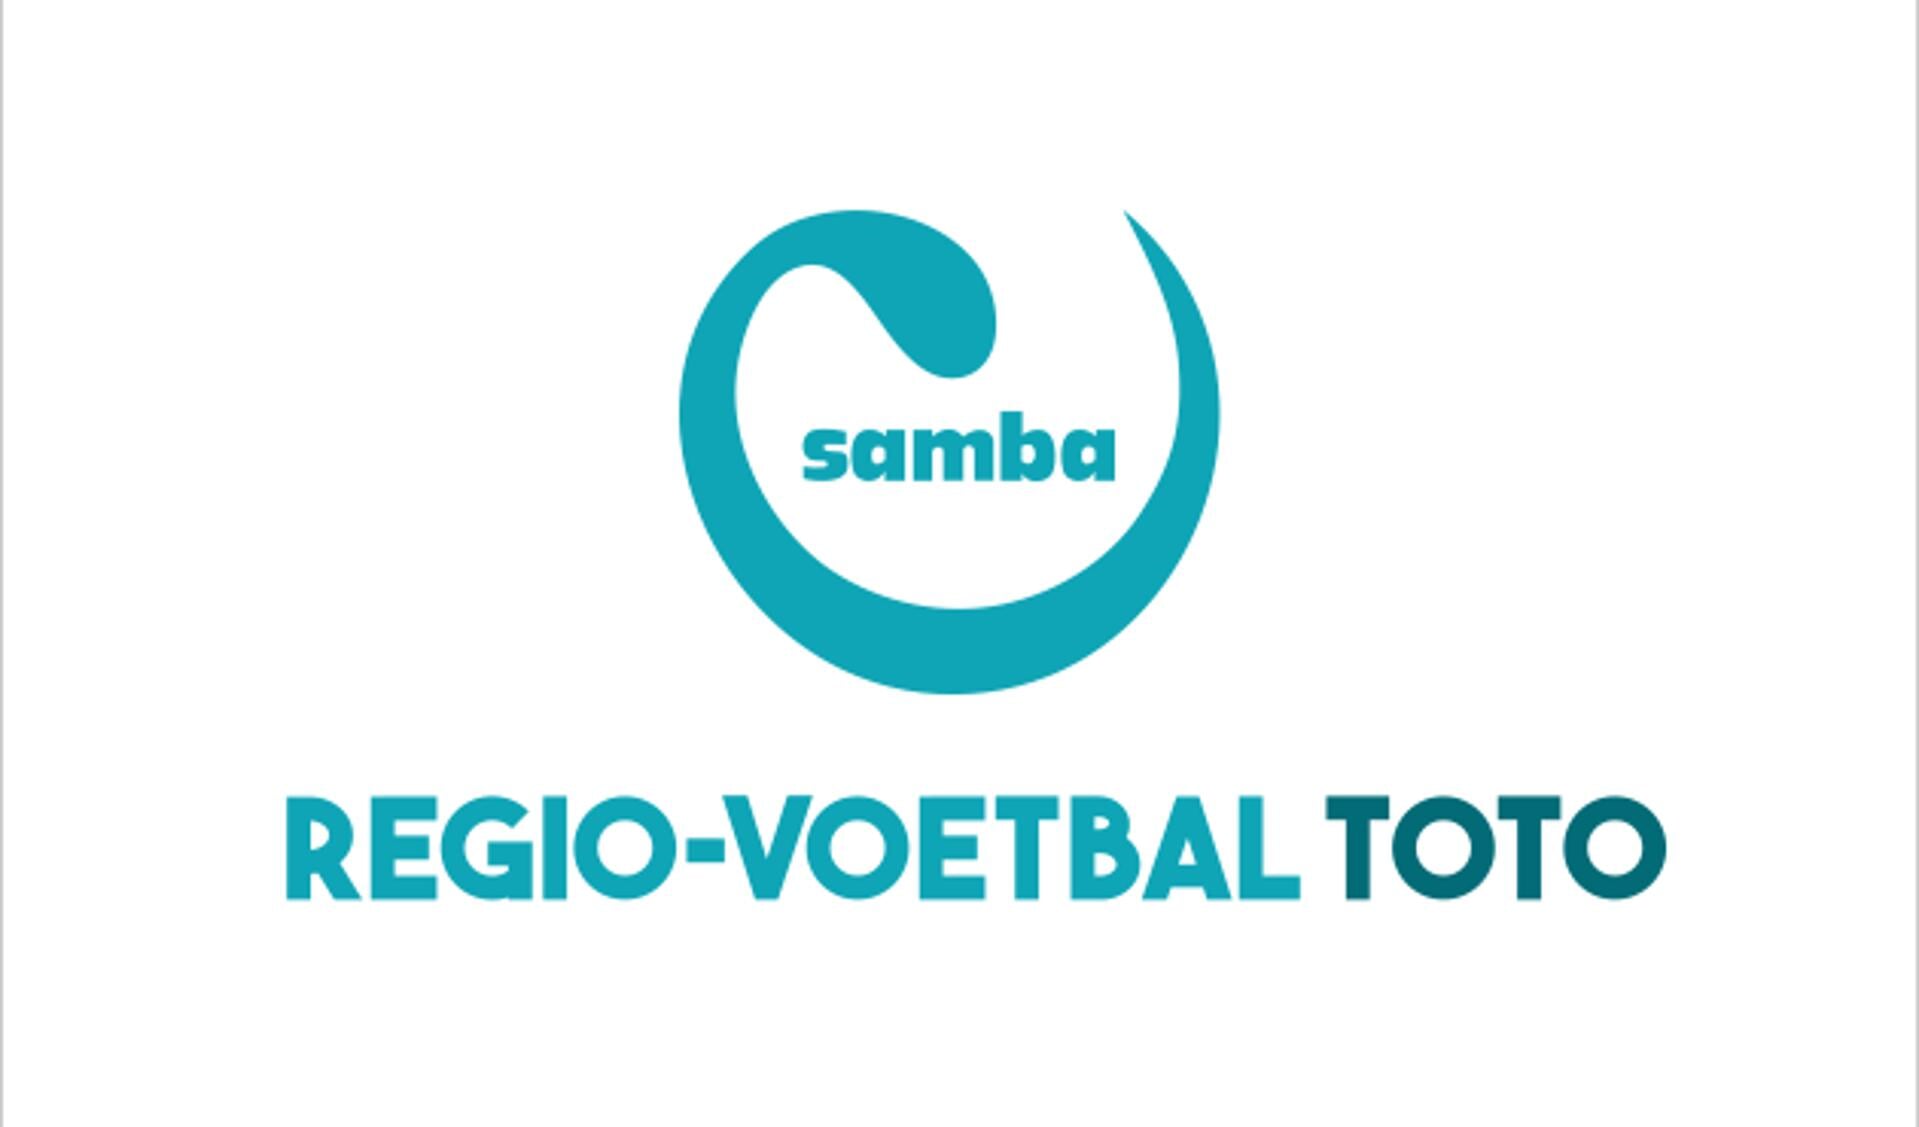 Anton van der Giessen winnaar week 38-2016 Samba Regio-Voetbal Toto